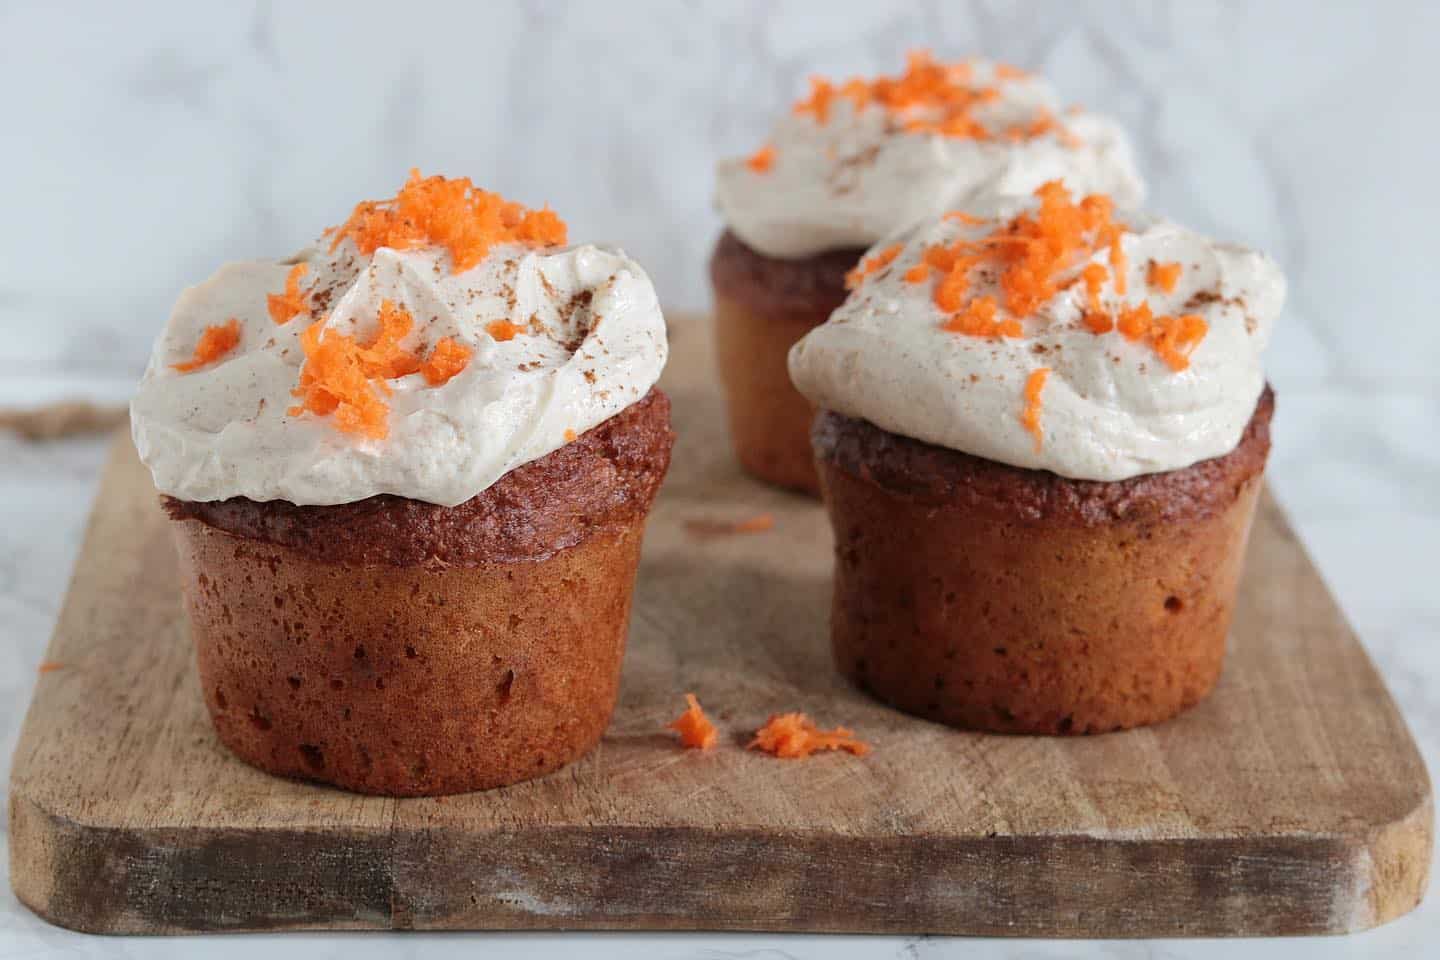 Ik heb voor de challenge deze week de meest verrukkelijke carrot cupcakes gebakken! 🥰 Ik heb vaker carrot cakes gebakken, maar wat mij betreft heeft deze de beste structuur en smaak! Lekker zacht, beetje fluff, absoluut niet droog of zwaar. Just perfect! 🐣

Het recept is te vinden op mijn website 🥕 (link in bio)
#koolhydraatarm #koolhydraatbeperkt #carrotcake #lowcarb #glutenvrij #oanhskitchen 

https://www.oanhskitchen.nl/carrot-cupcakes/